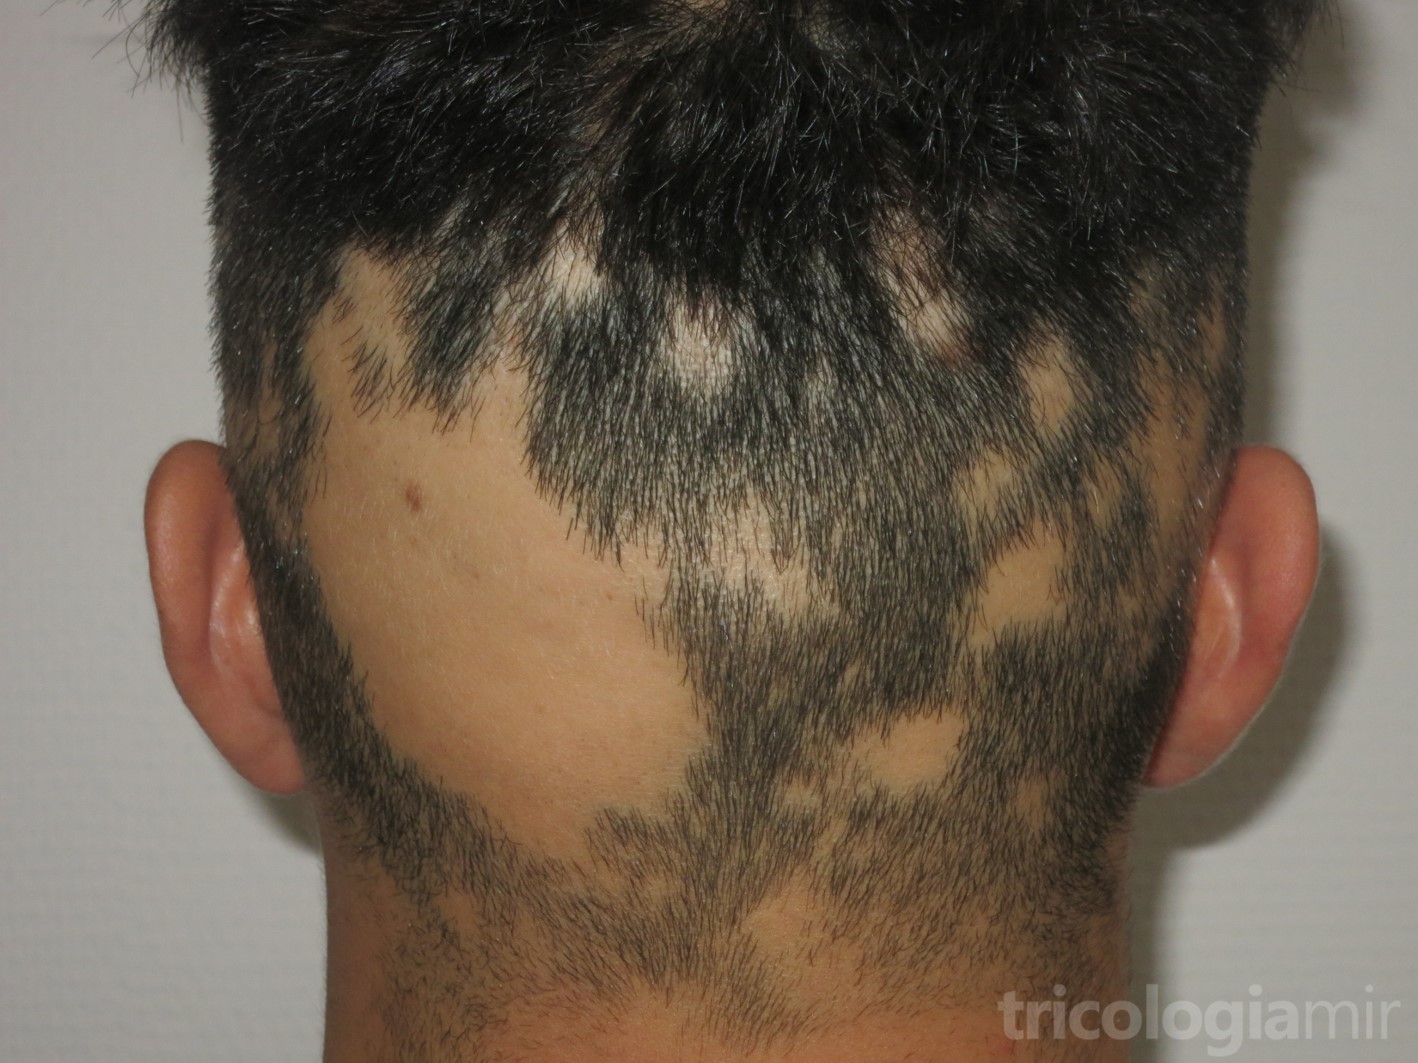 Alopecia areata en placas multifocal de predominio en zona occipital